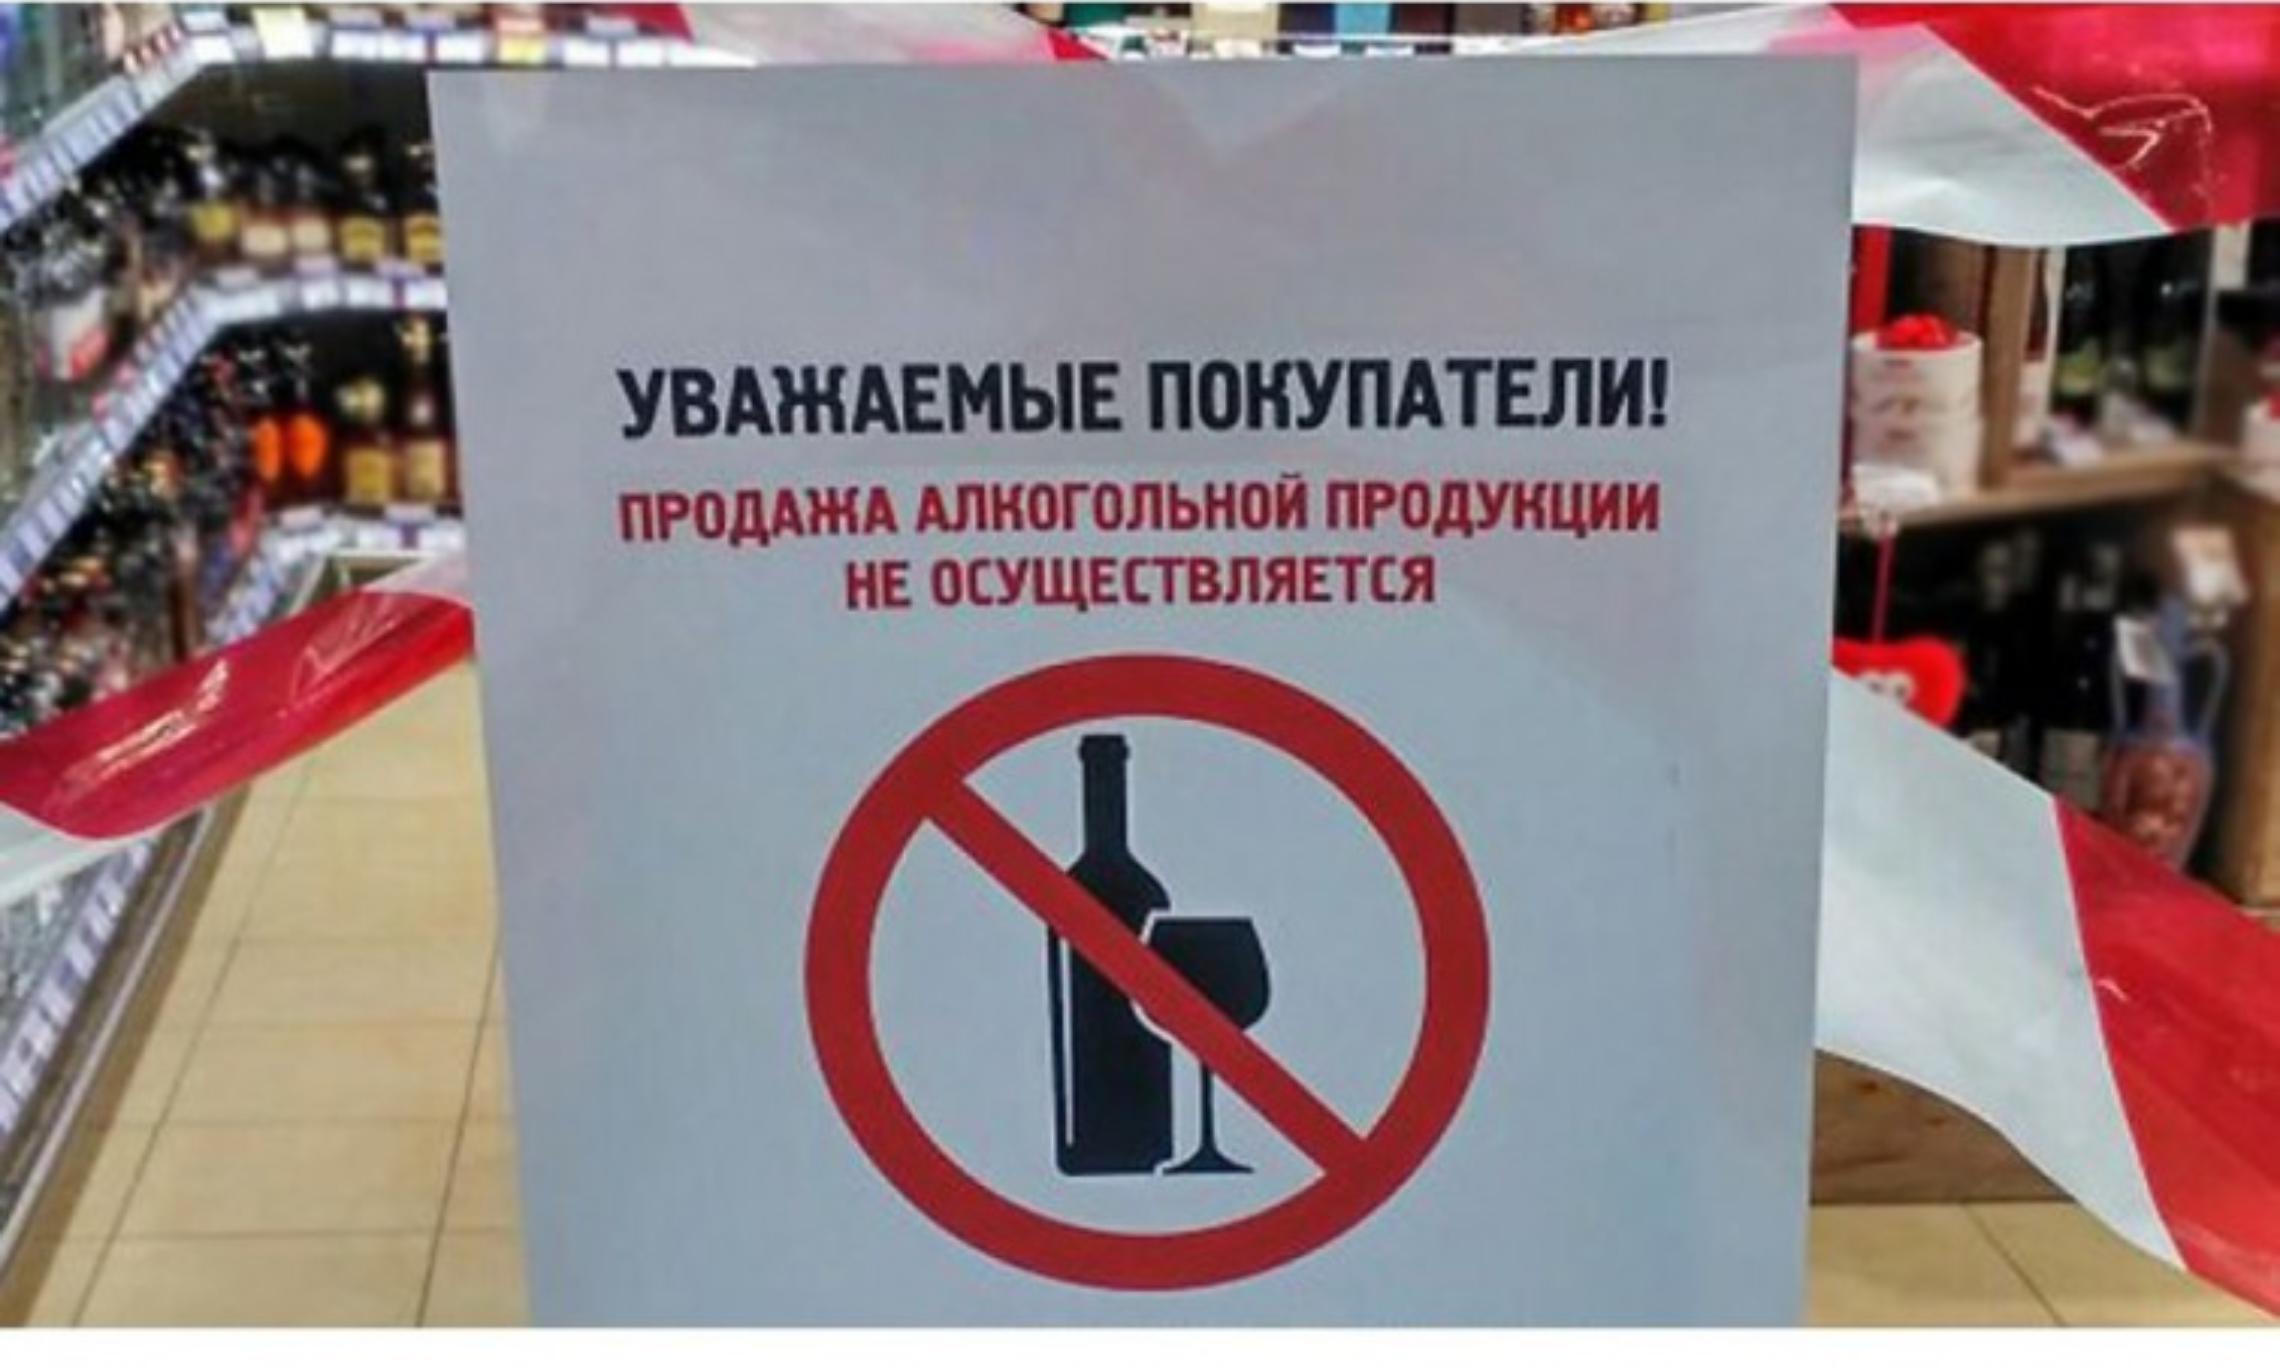 23 июня продажа. Алкоголь не продается. Запрет алкогольной продукции. Продажа алкогольной продукции запрещена.